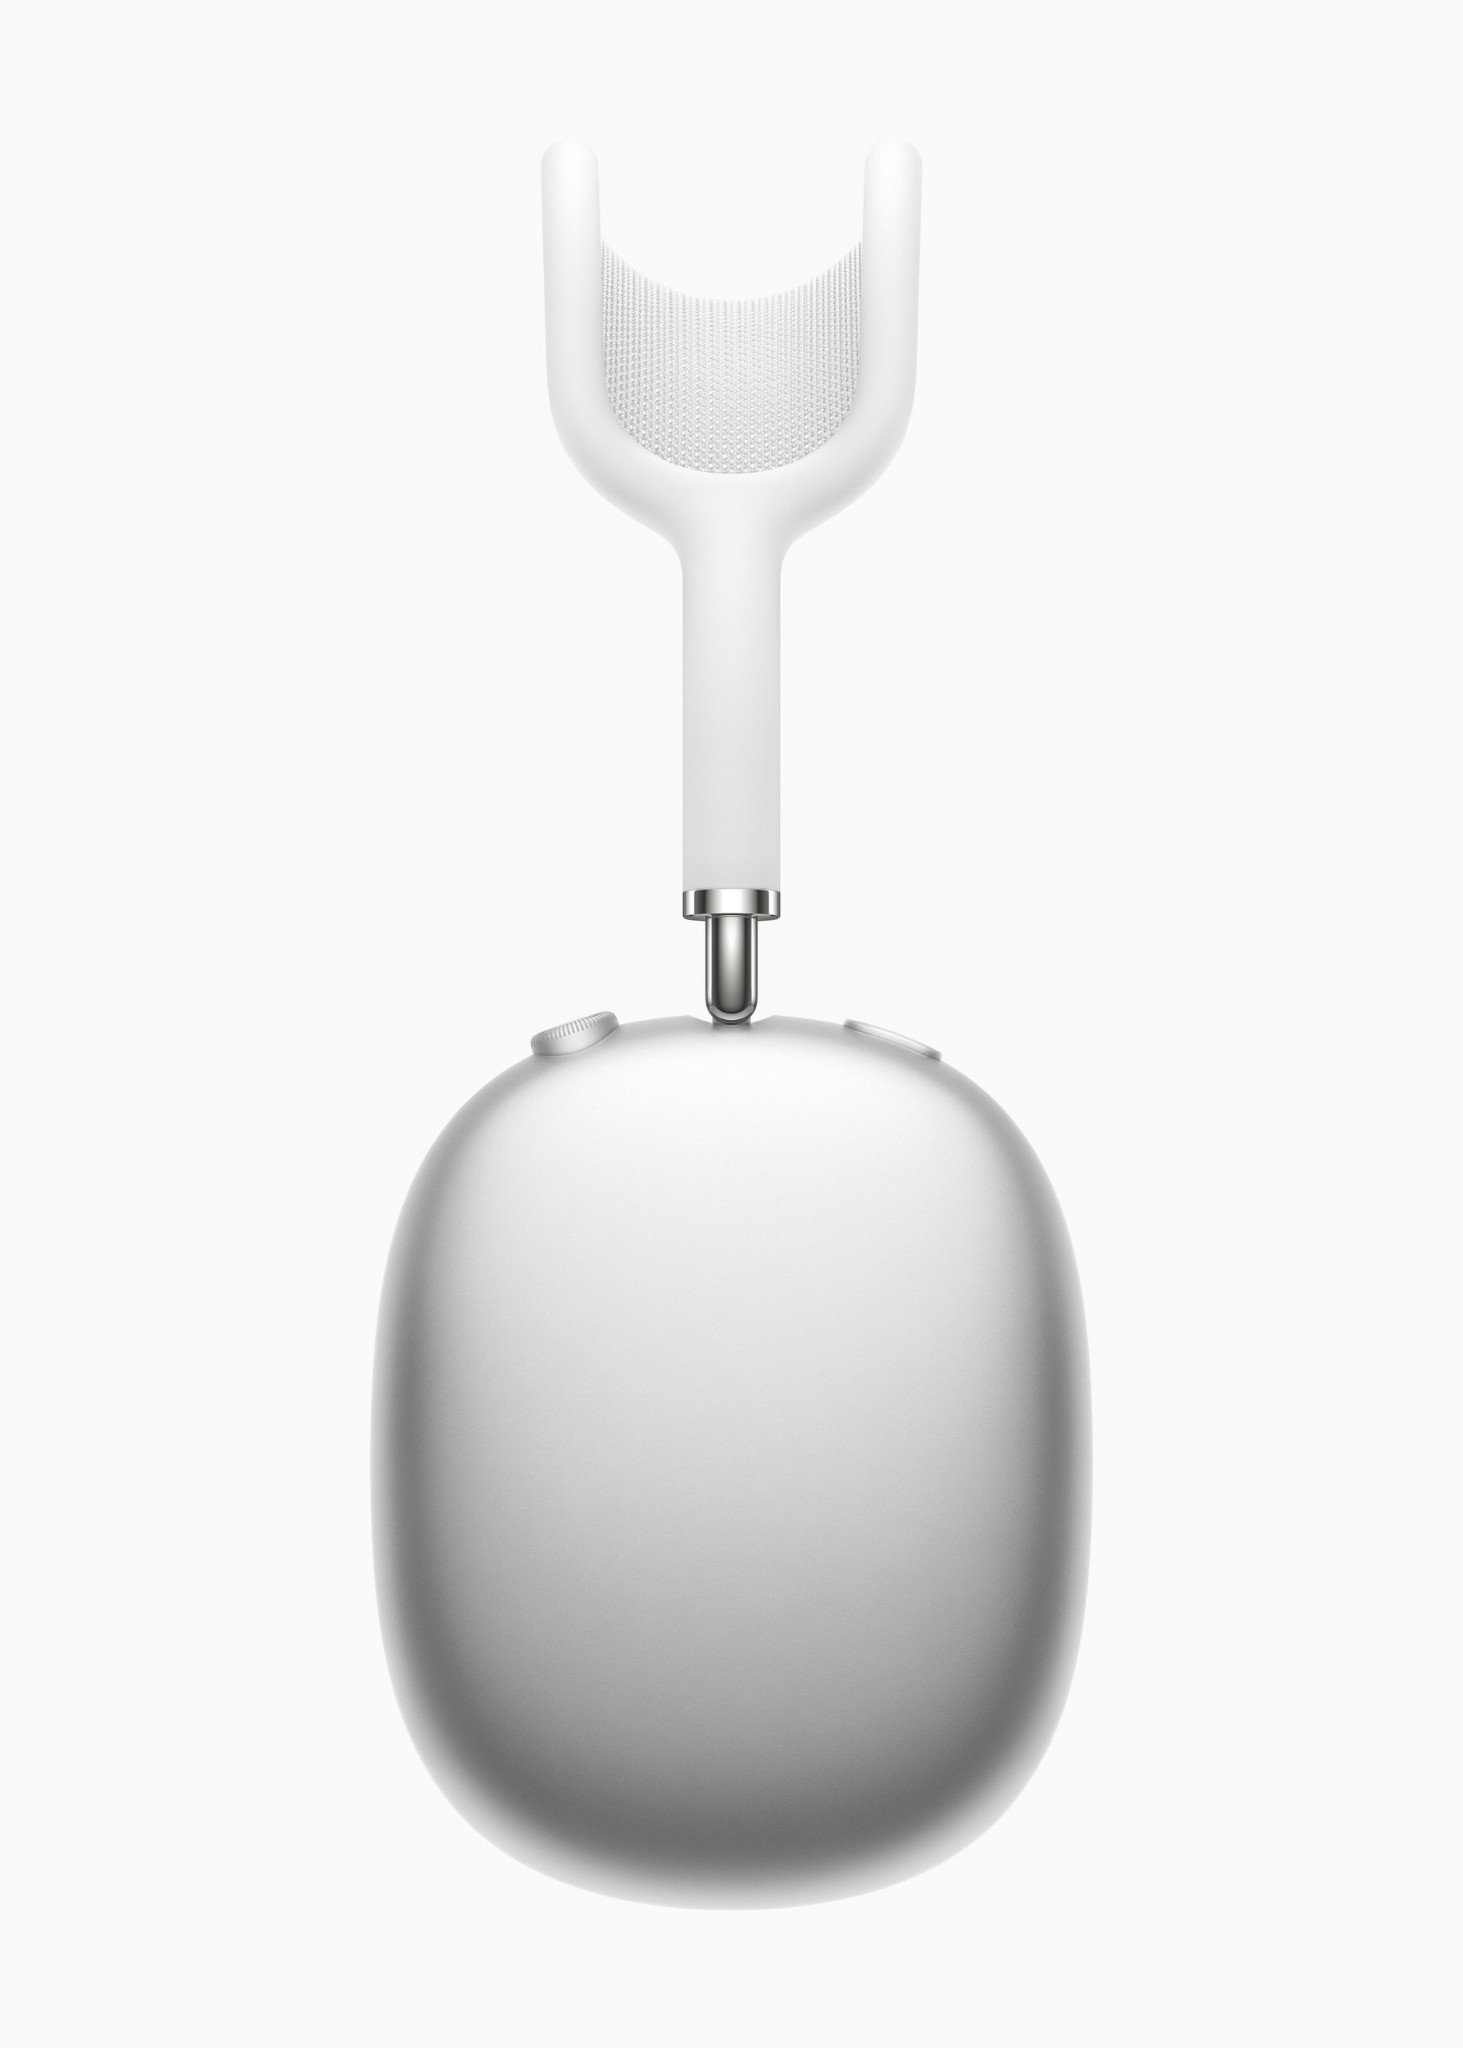 Apple ra mắt tai nghe trùm đầu AirPods Max, không phải AirPods Studio như đồn đại